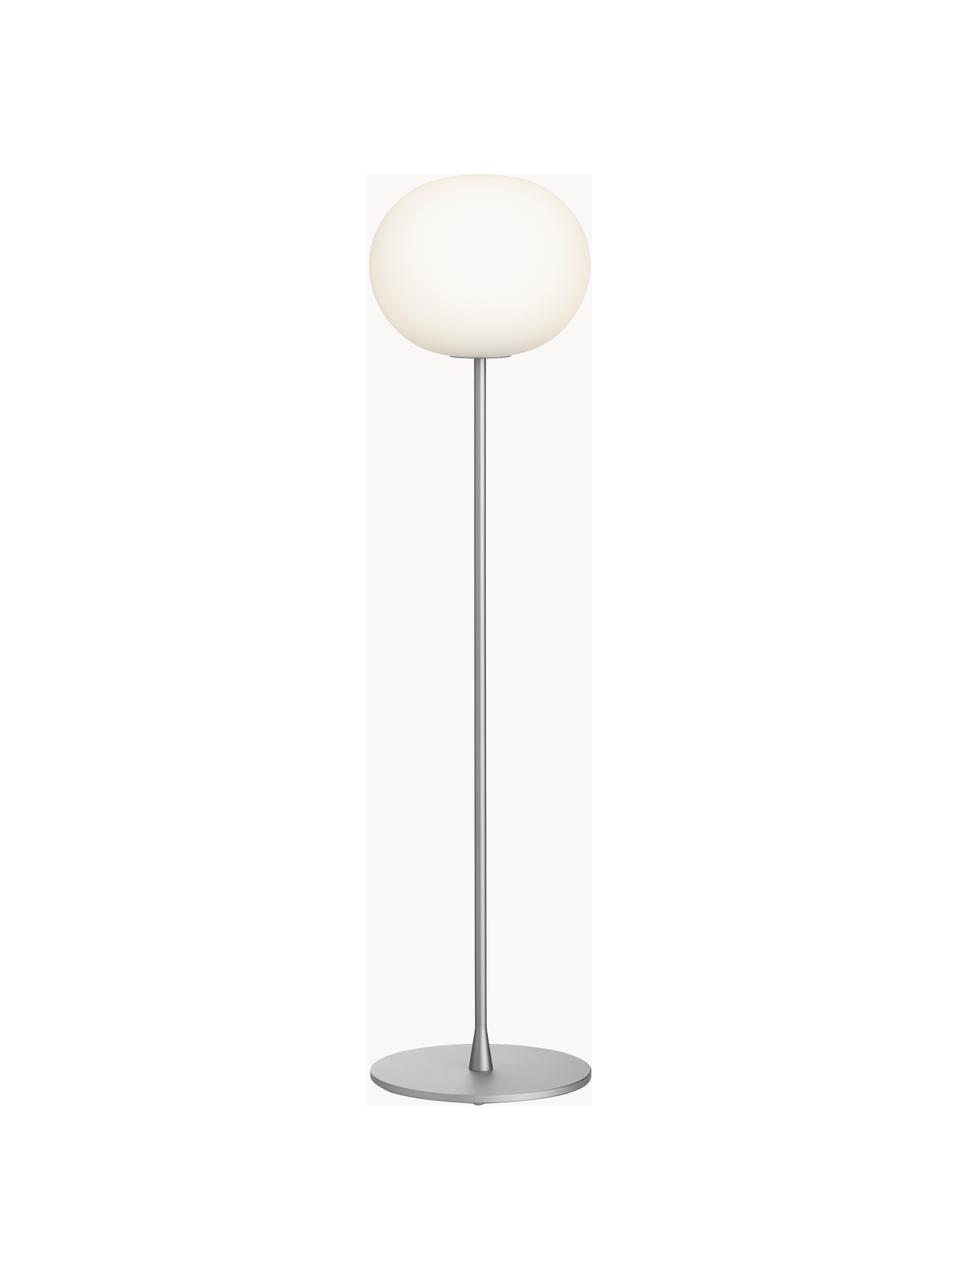 Lampa podłogowa z funkcją przyciemniania Glo-Ball, Odcienie srebrnego, W 135 cm